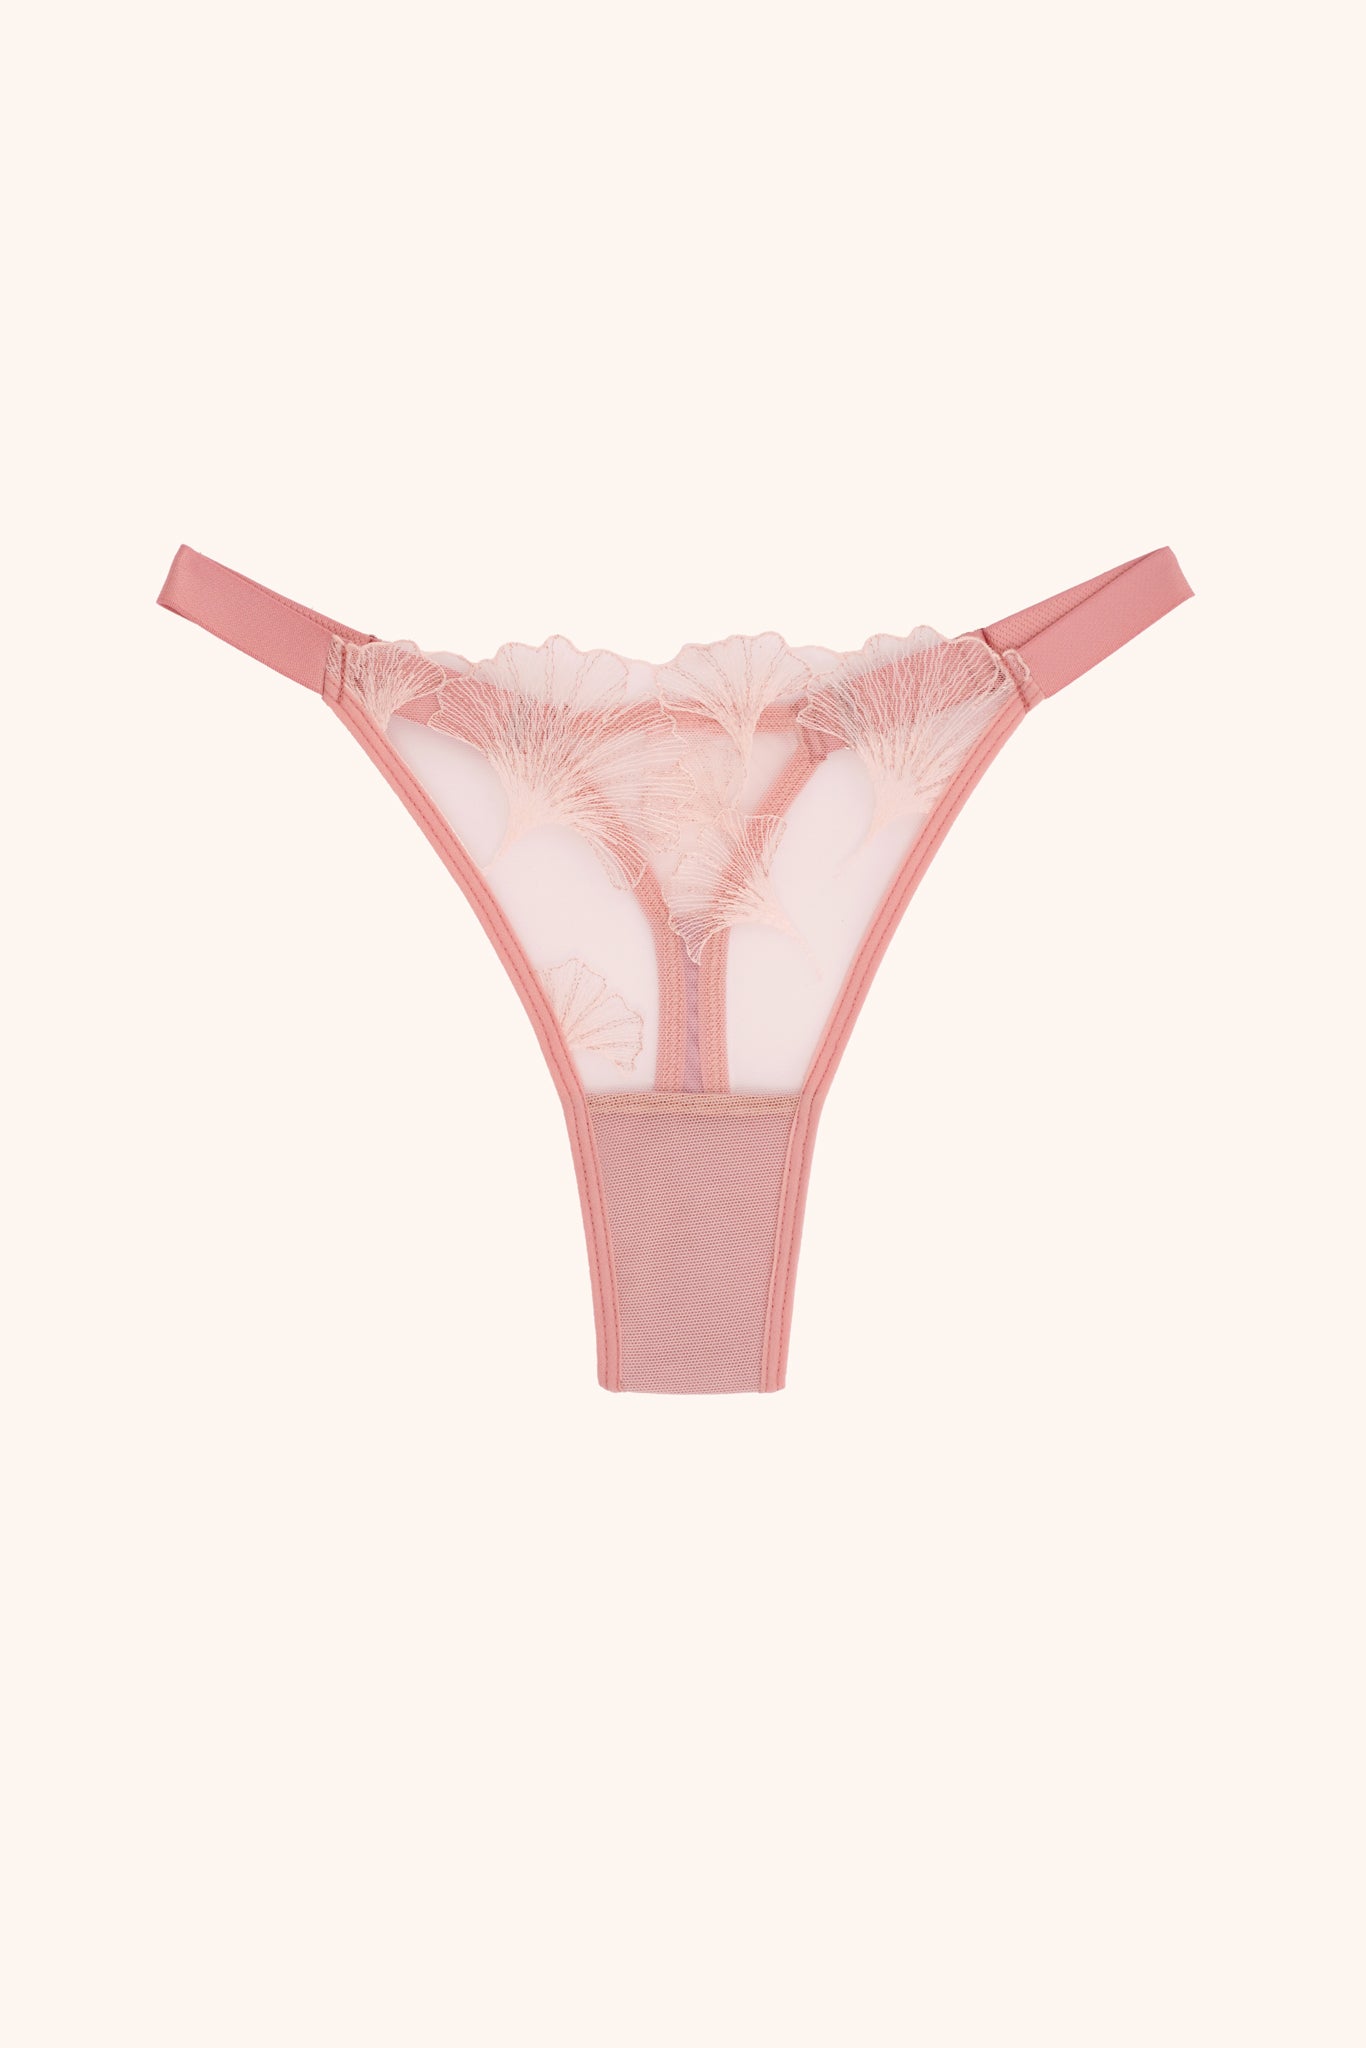 Biloba adjustable thong - pink